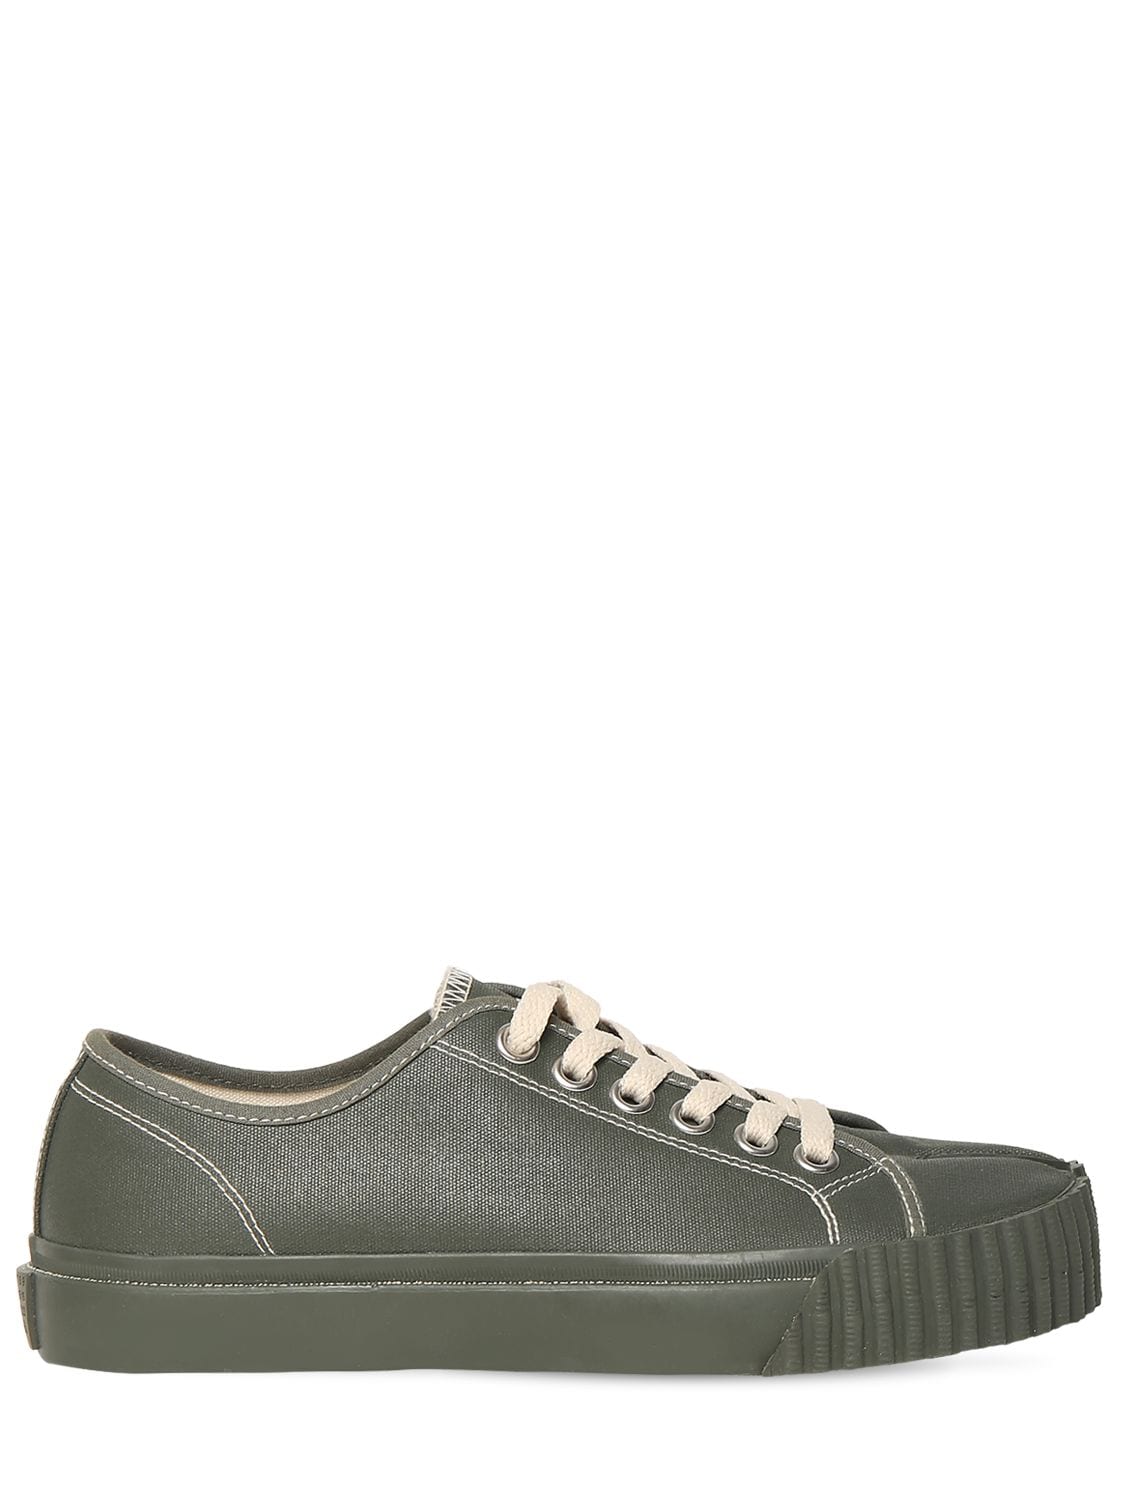 Maison Margiela 10mm Tabi Rubberized Canvas Sneakers In Olive Green ...